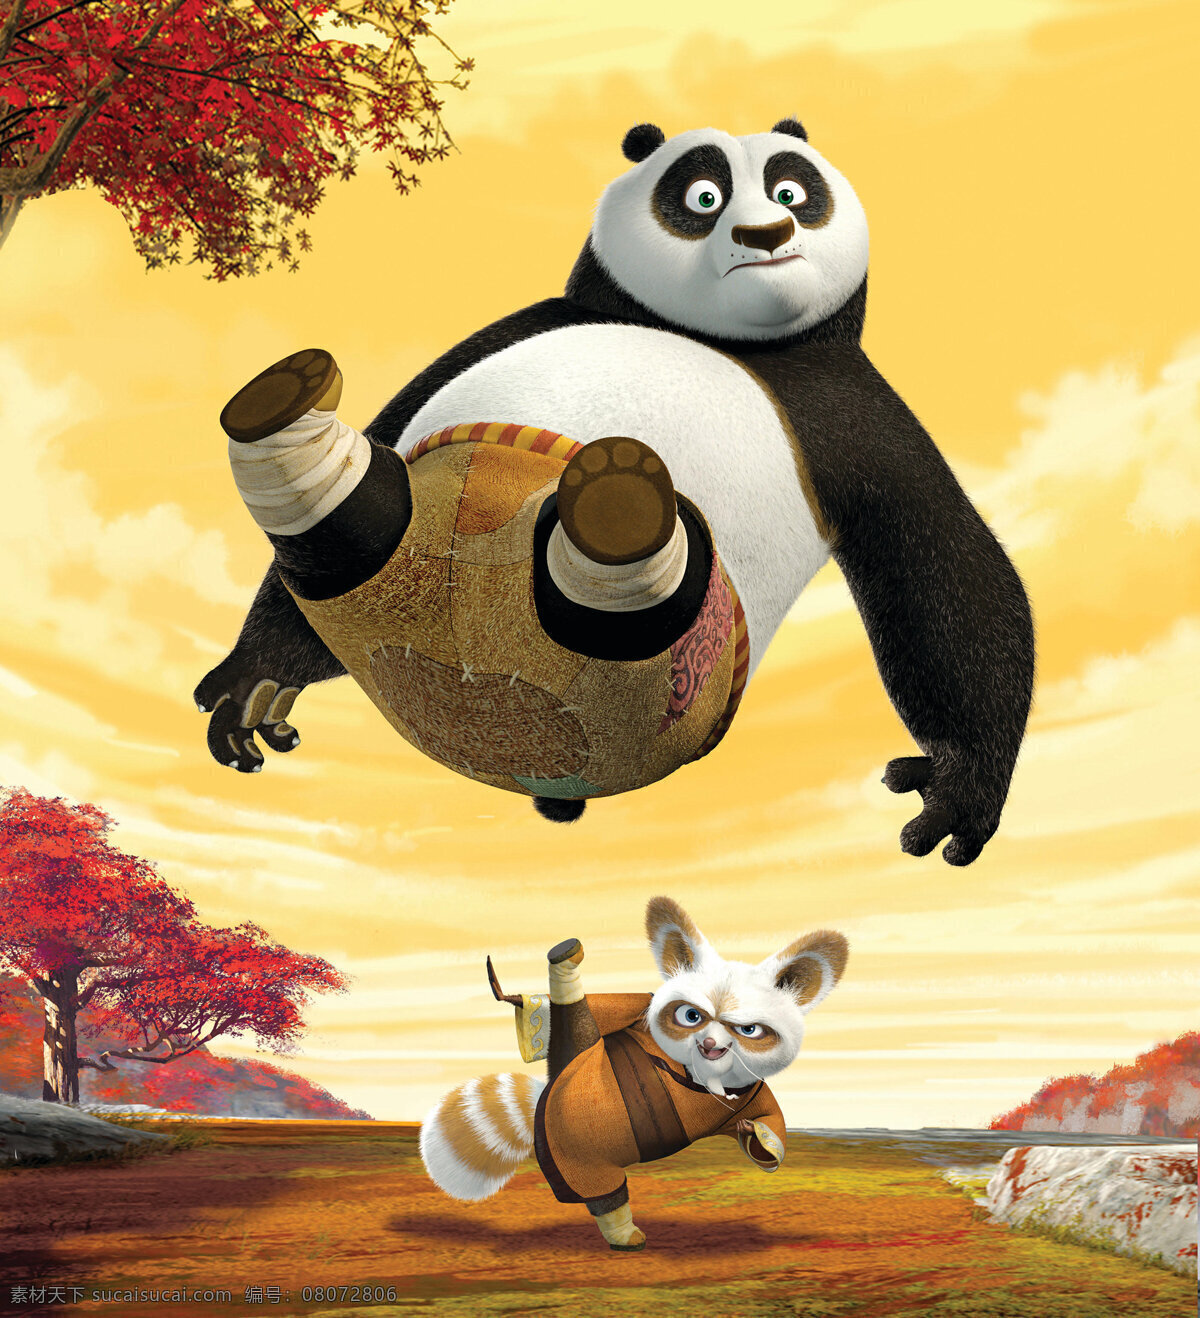 电影海报 功夫 熊猫 功夫熊猫 kung fu panda 电影 影视 海报 高清晰 大图 文化艺术 影视娱乐 设计图库 摄影图库